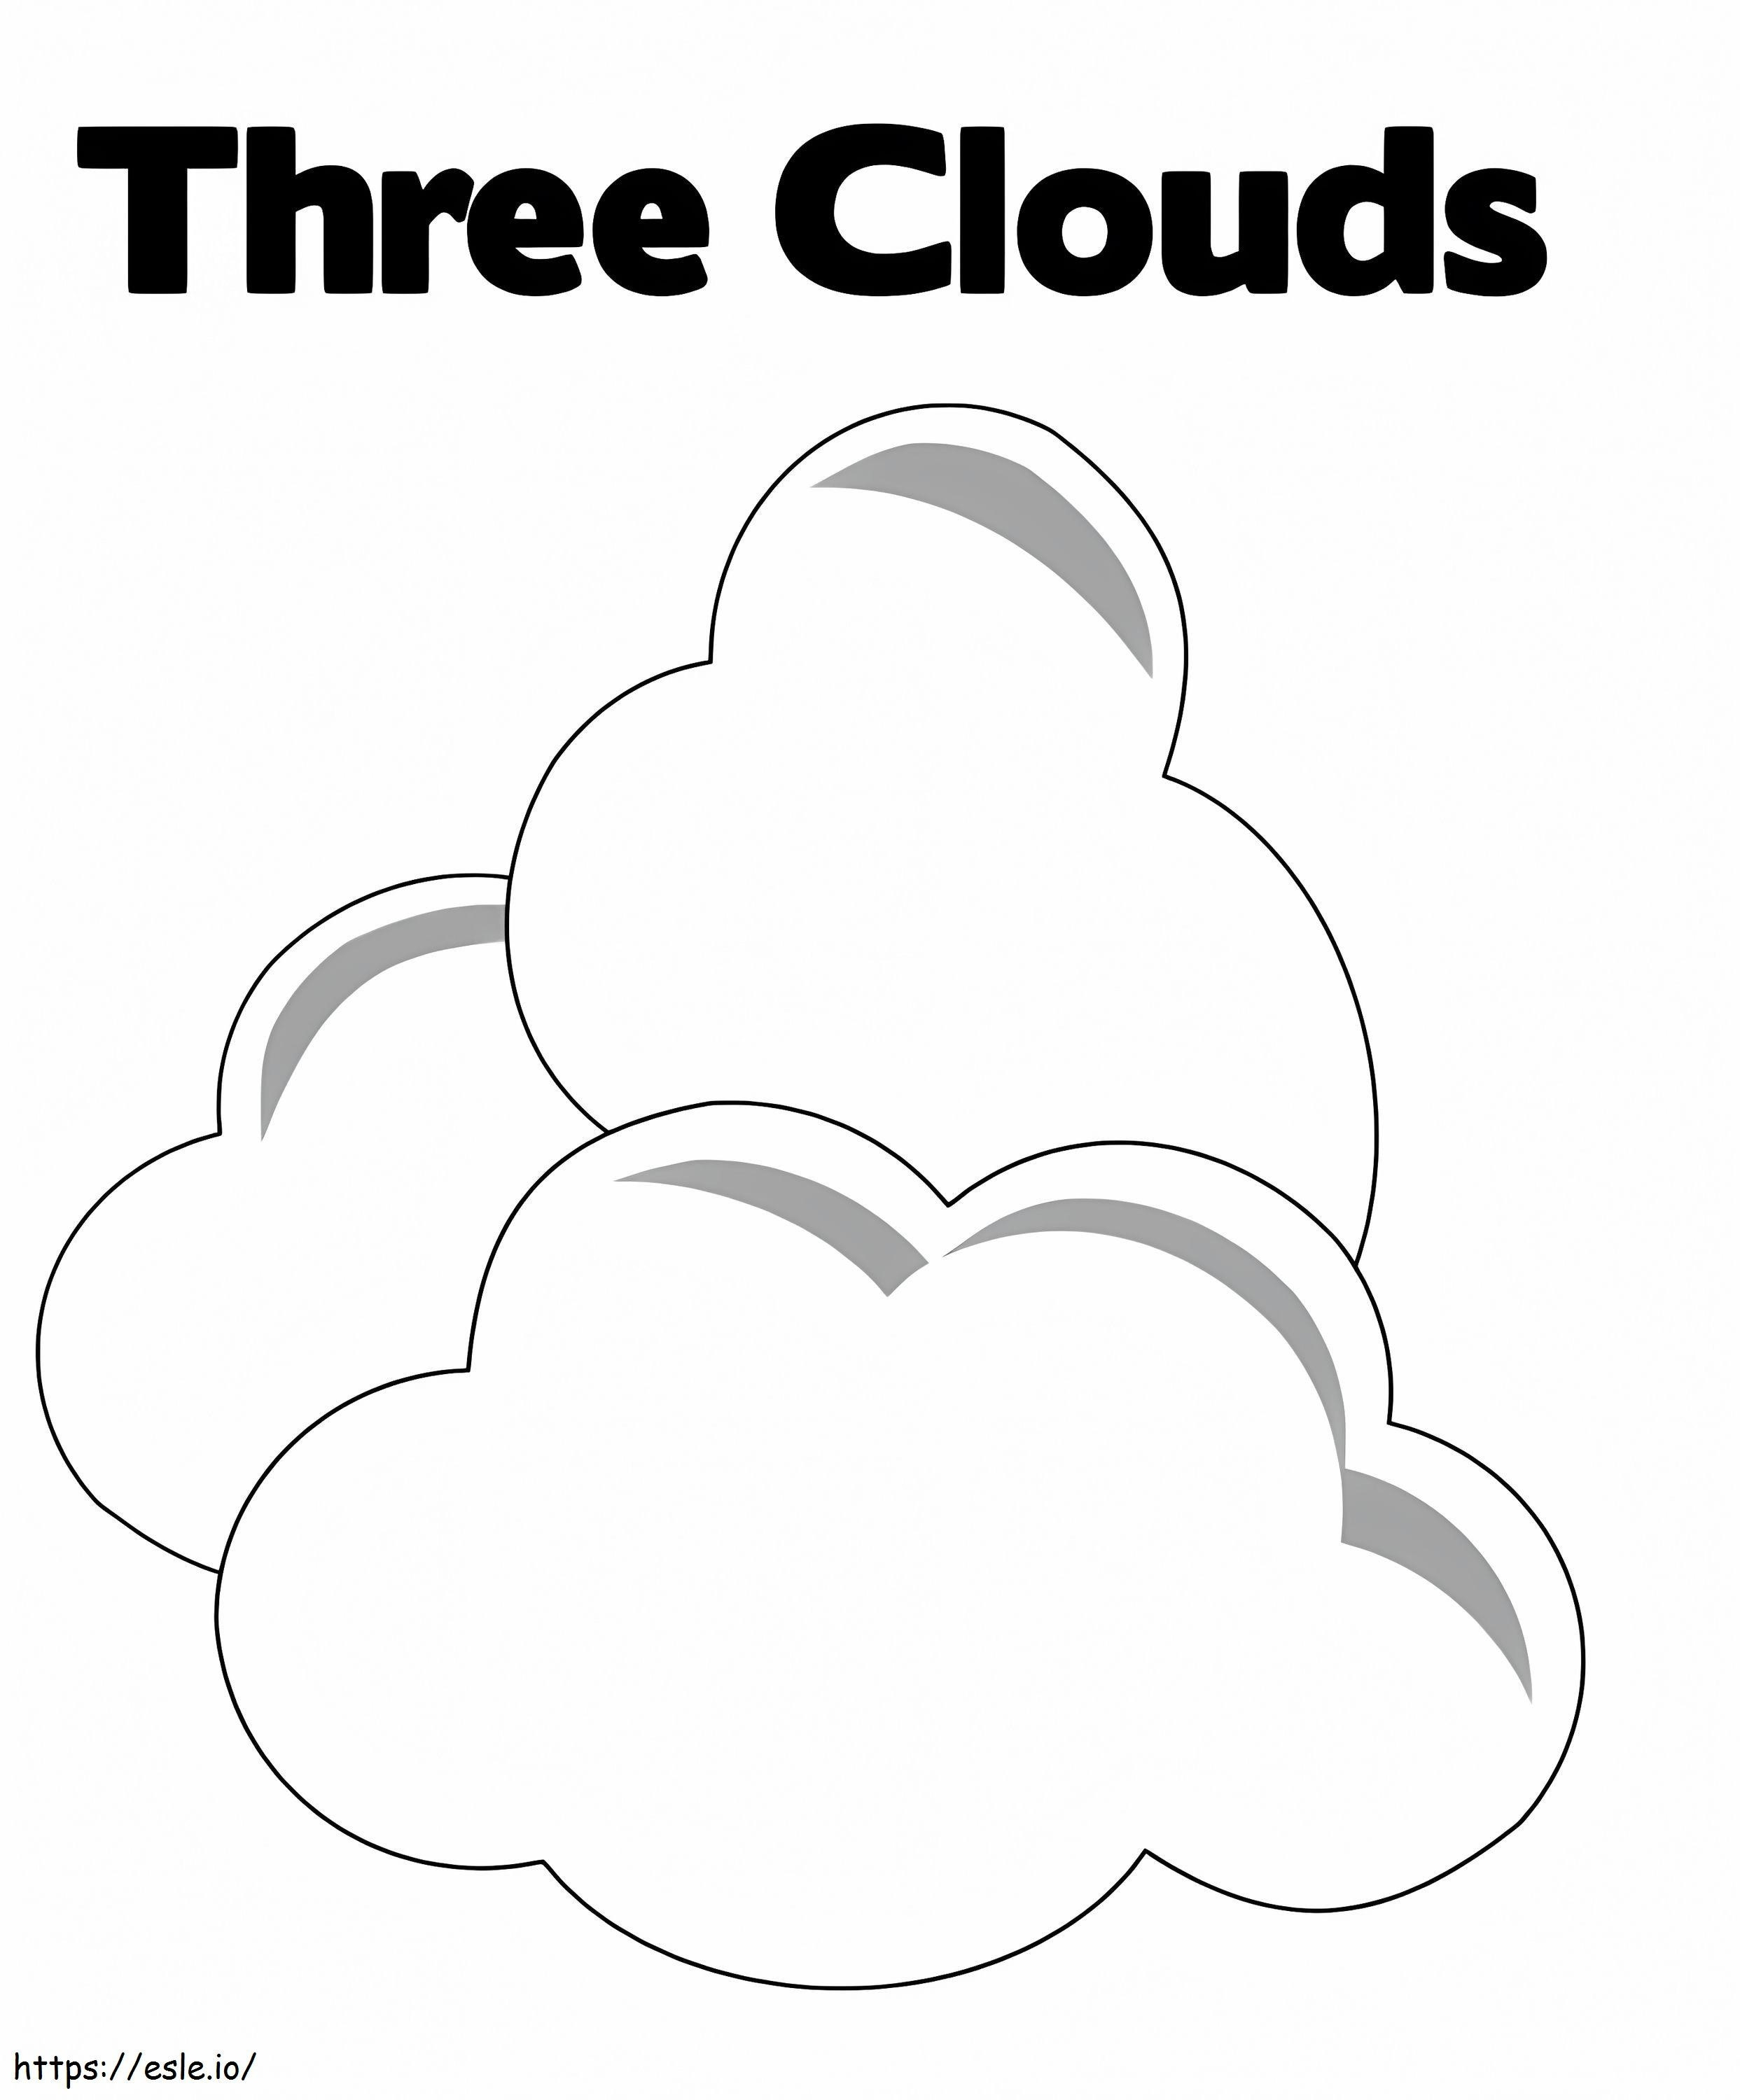 Üç Bulut boyama